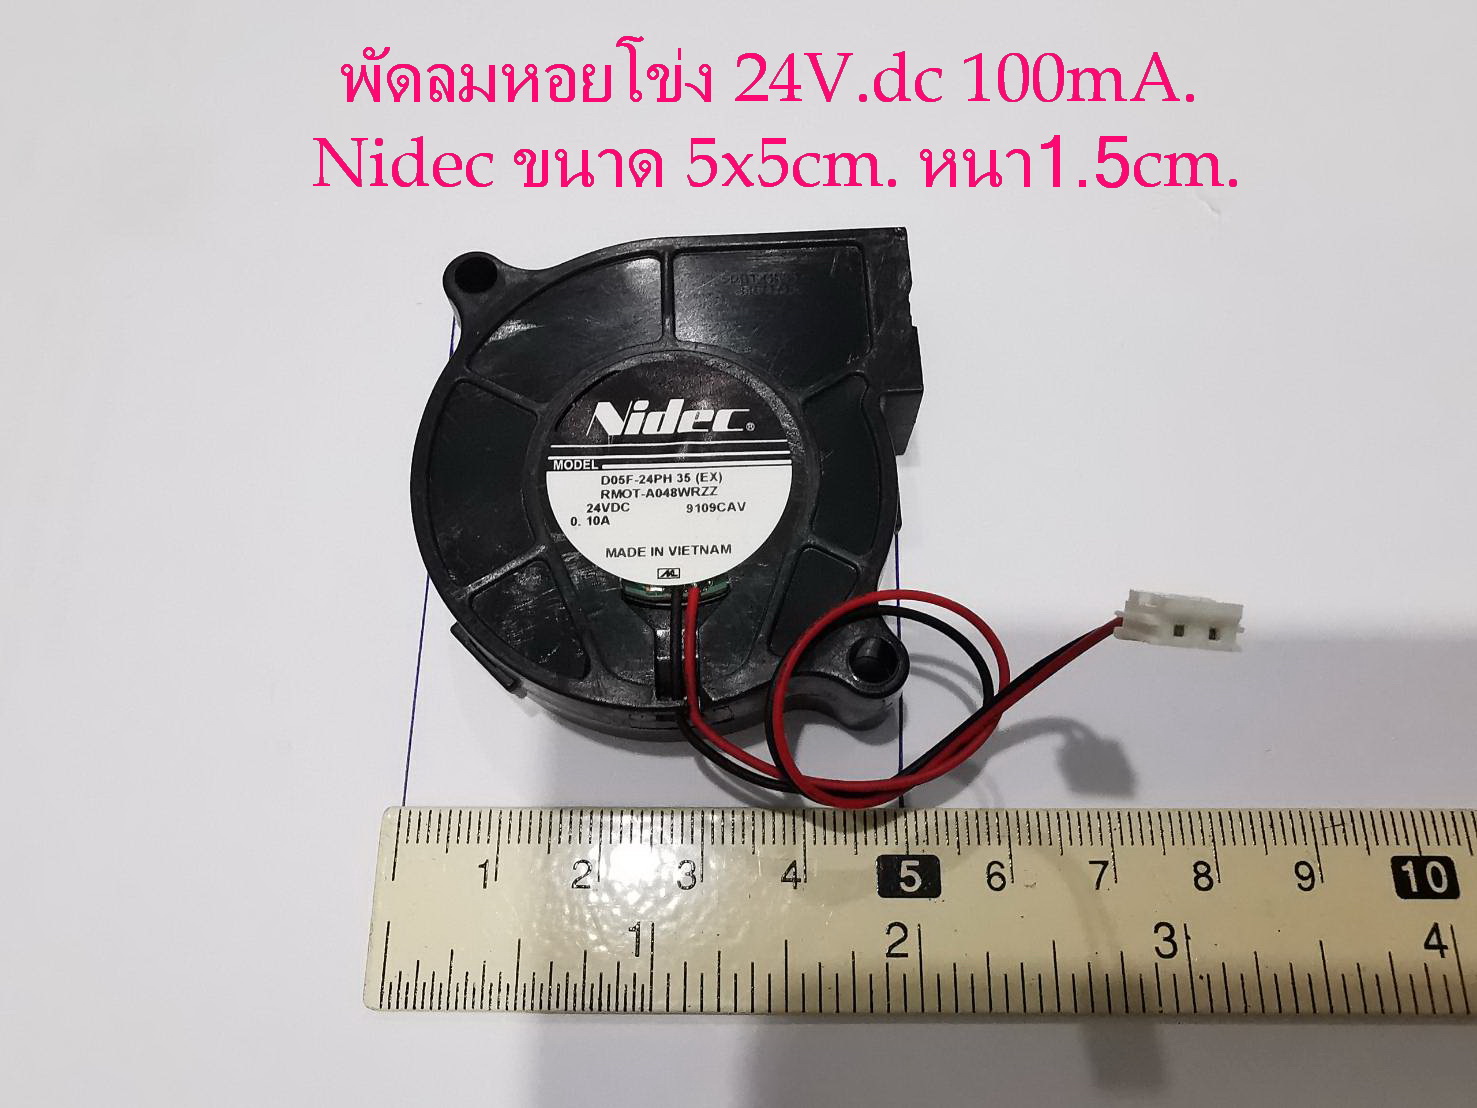 พัดลมระบายความร้อน ขนาด 5x5 cm.หนา 1.5cm. ไฟDC 24Volt 0.10A.(100mA.) Nidec รุ่นD05F-24PH (Made in Vietnam)